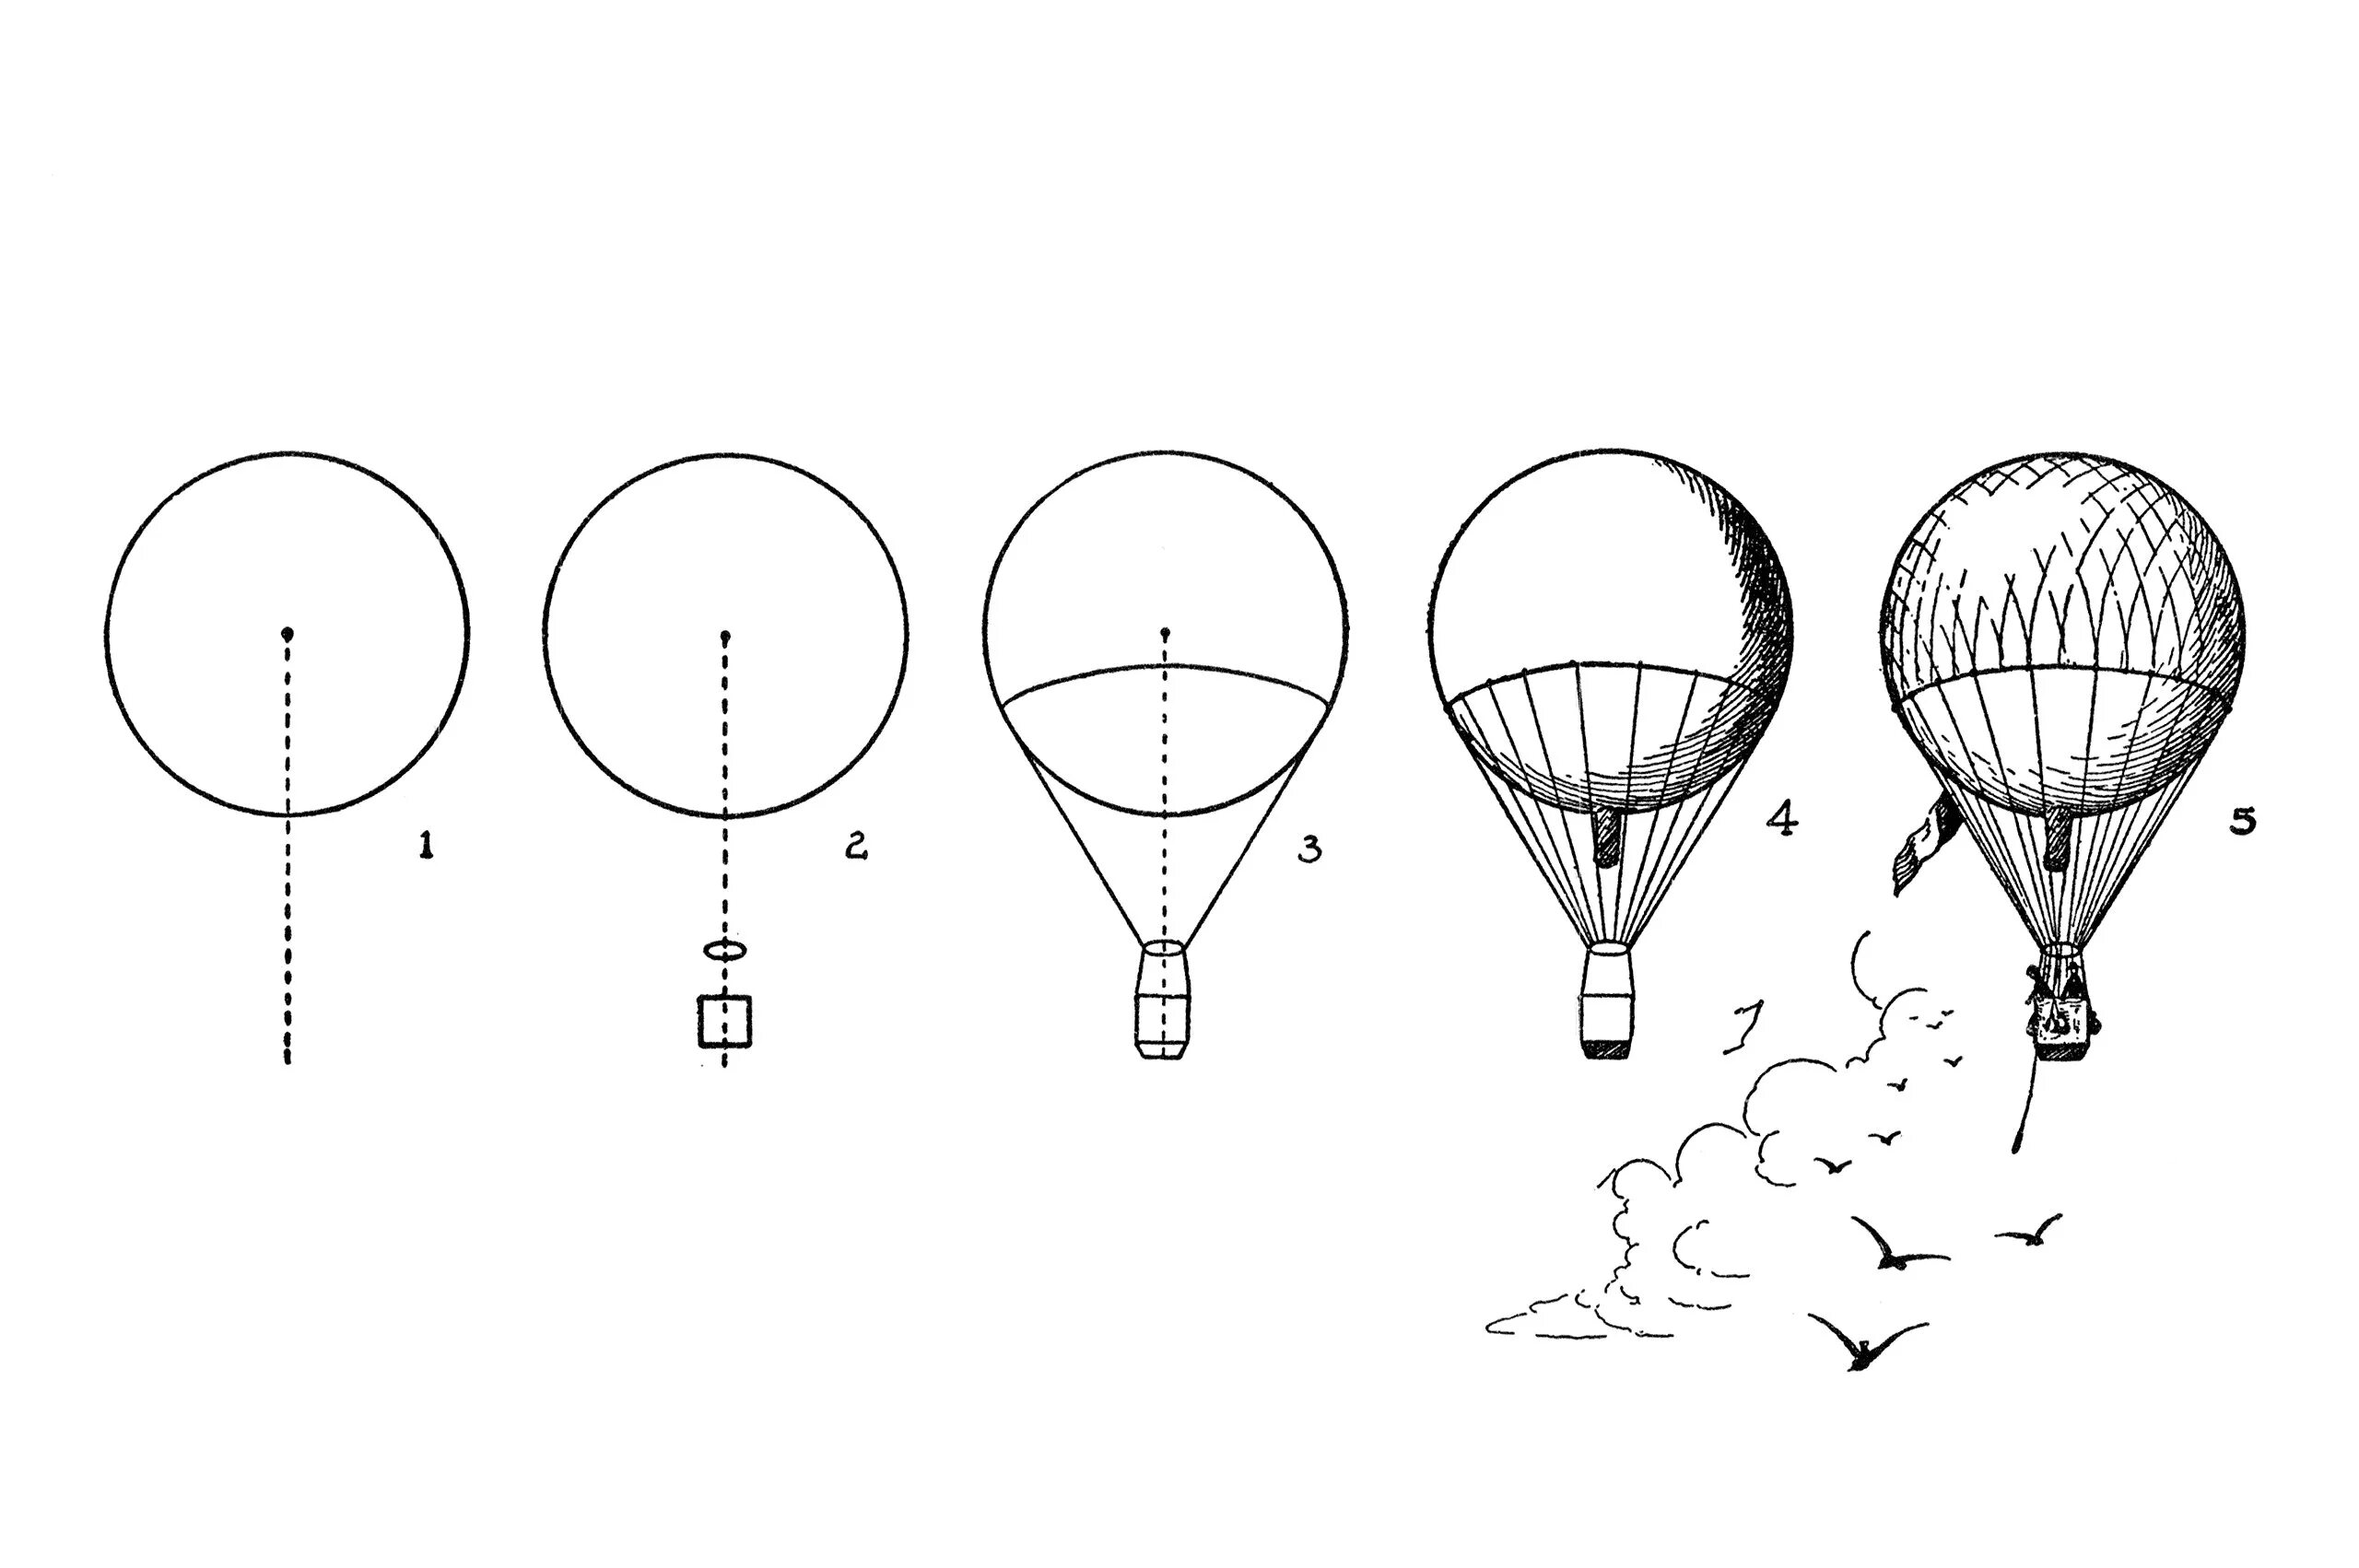 Карта на воздушном шаре. Эдвин Лутц Начни рисовать. Как нарисовать воздушный шар. Лутц Начни рисовать. Уроки рисования воздушный шар.